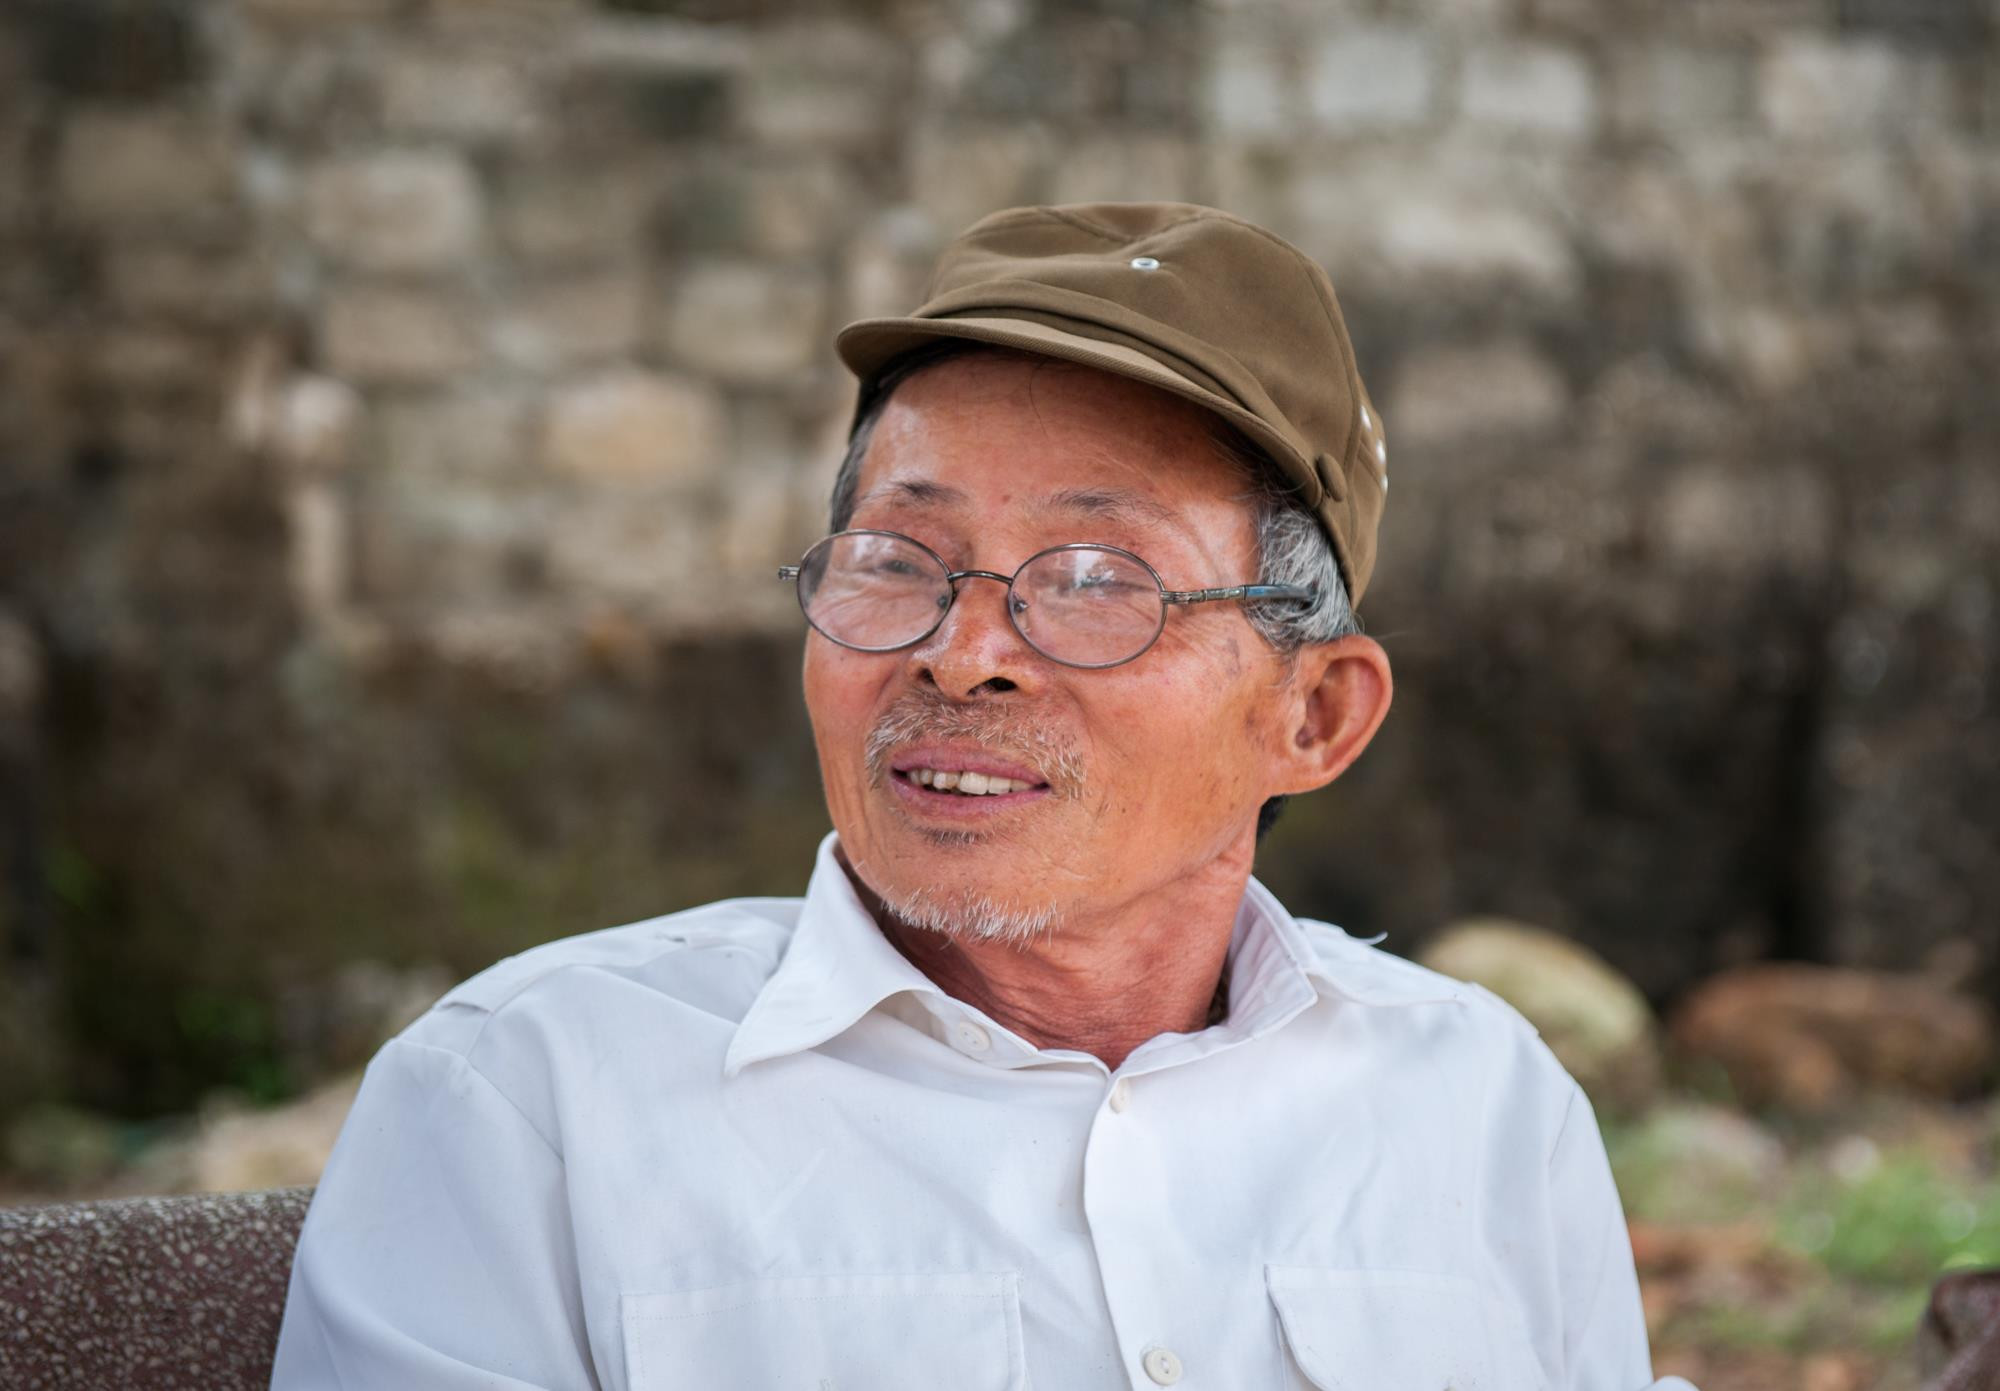 Cựu TNXP Trần Quang Nhật (72 tuổi) bồi hồi về những xúc cảm ngày ấy: “Trong những ngày ấy, thanh niên chúng tôi ai cũng muốn được trở thành Bộ đội Cụ Hồ. Đăng ký mãi không được, tôi tự nhủ mình vào TNXP cũng được. Ngày 15/5/1965, tôi gia nhập vào lực lượng TNXP...”. Ảnh: Tư liệu - Thành Cường